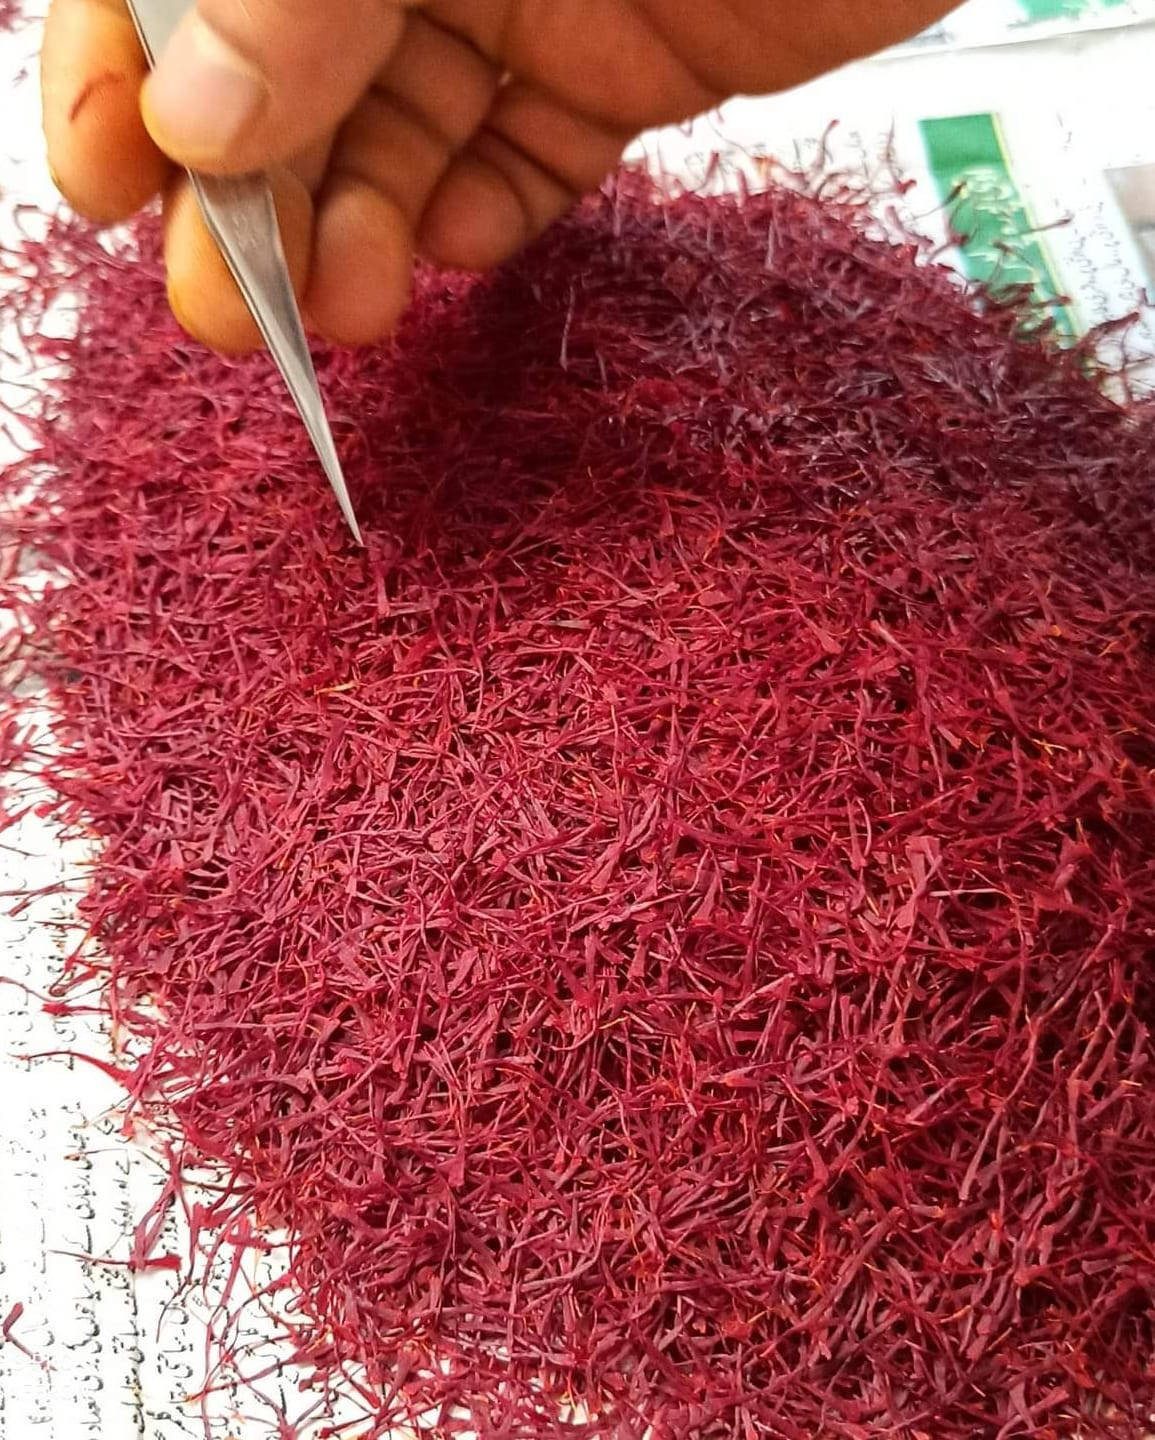 Kashmiri Saffron 1g